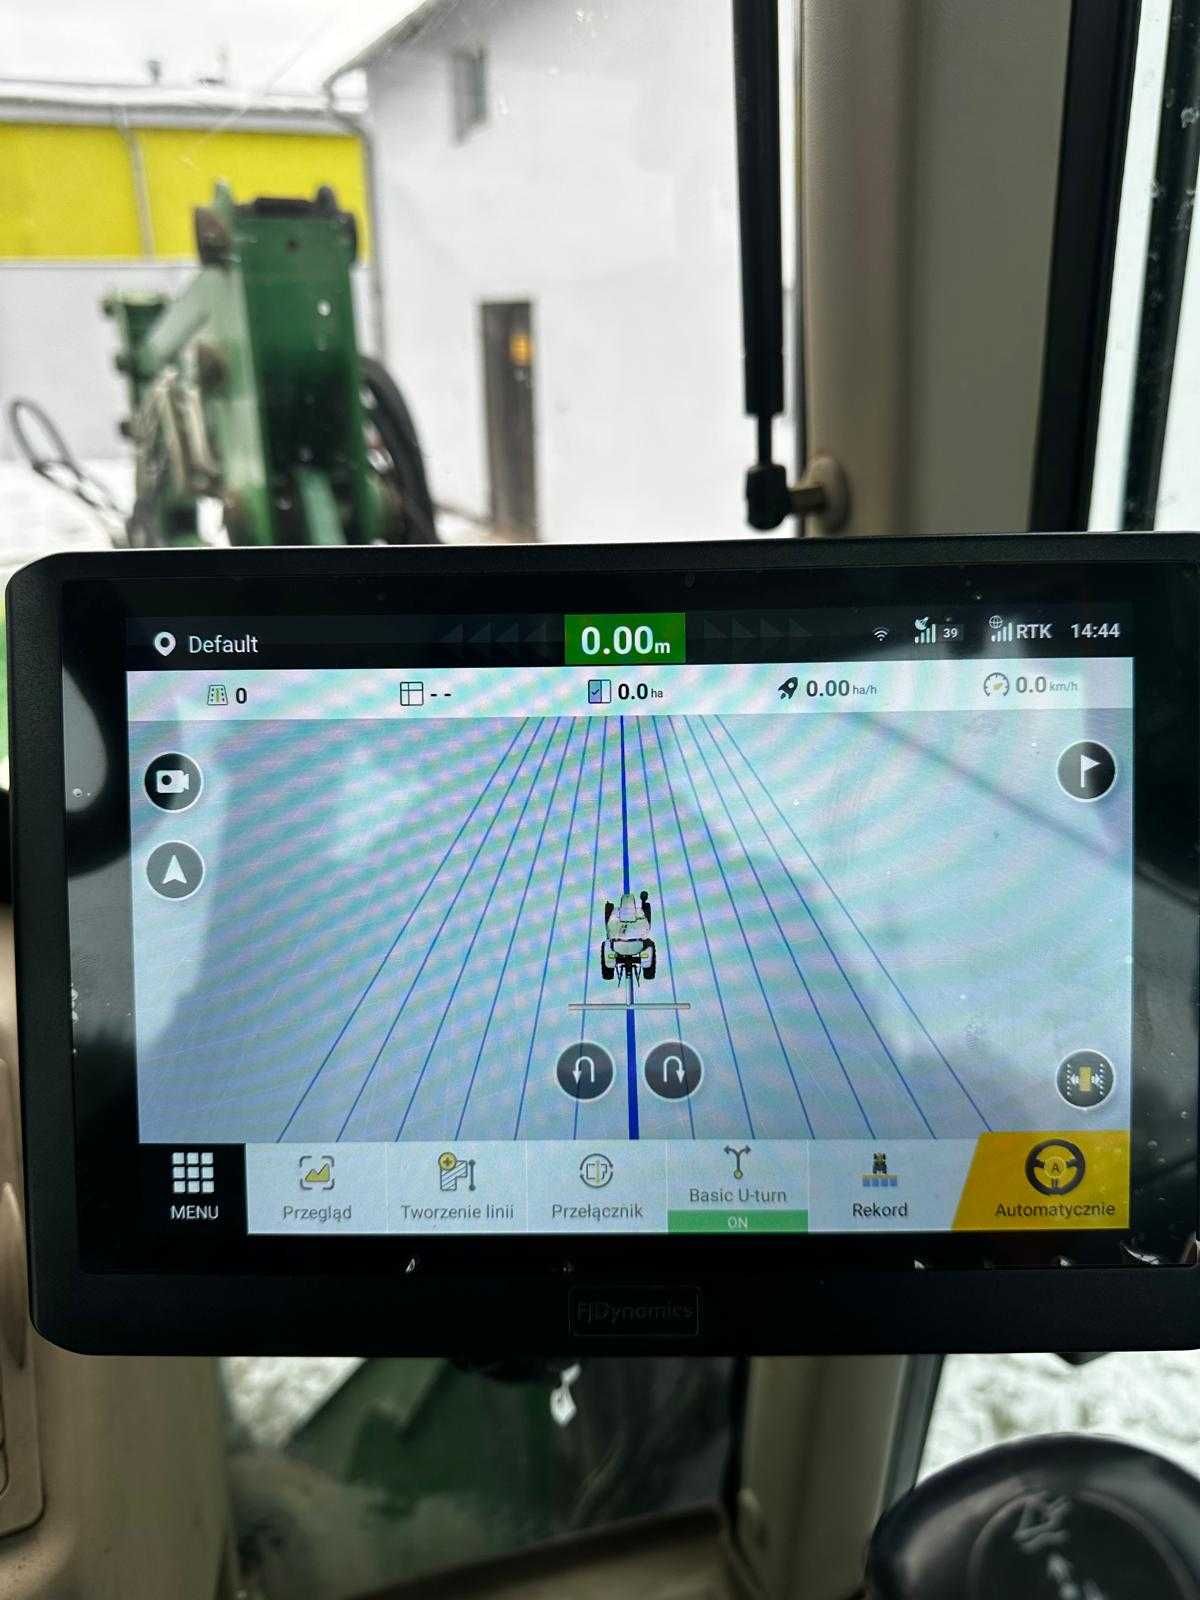 FJDynamics Nawigacja Rolnicza RTK GPS - prowadzenie RTK 2.5 cm